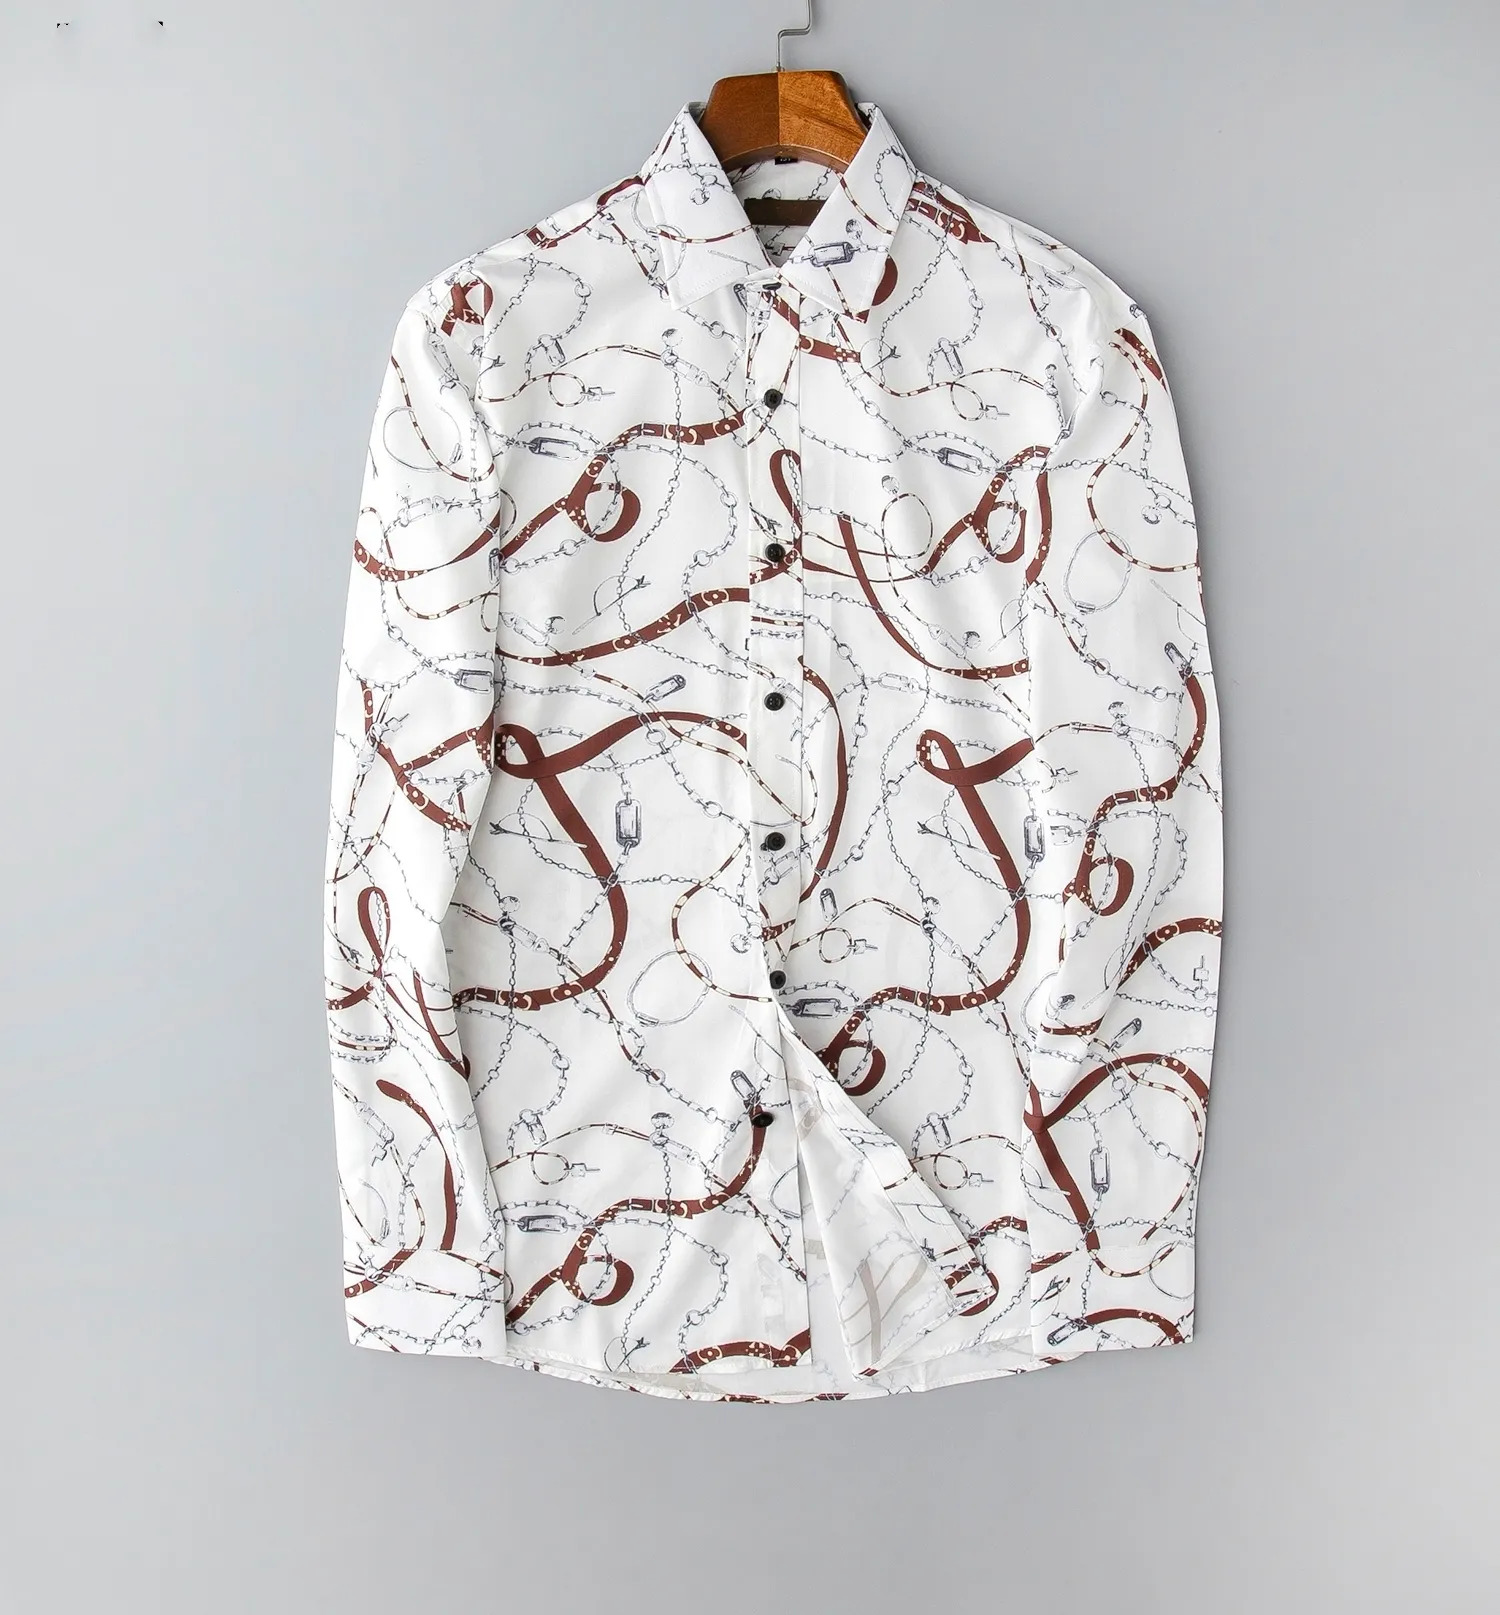 Camisa masculina de verão estampada de moda clássica confortável casual negócios 100% algodão xadrez masculina camisa formal mais tamanho asiático